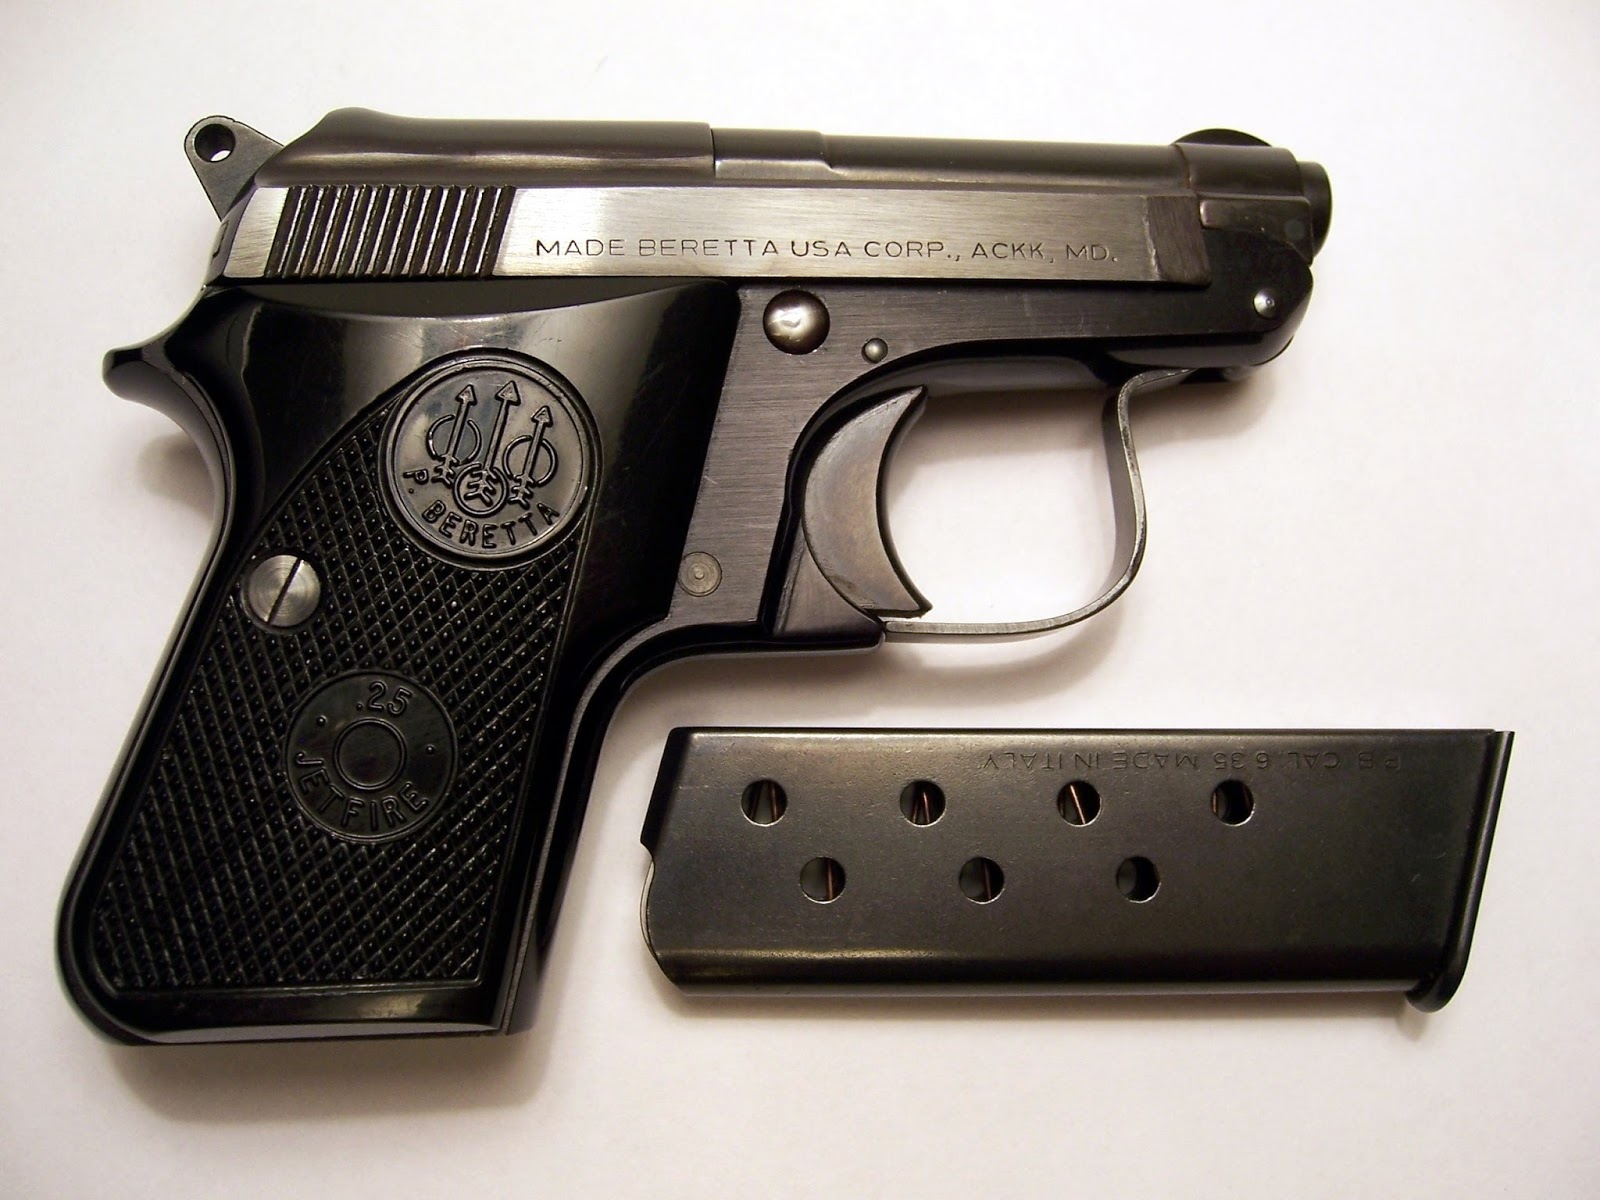 Le armi e la legge: Ma serve proprio sta cassaforte per custodire la pistola ?